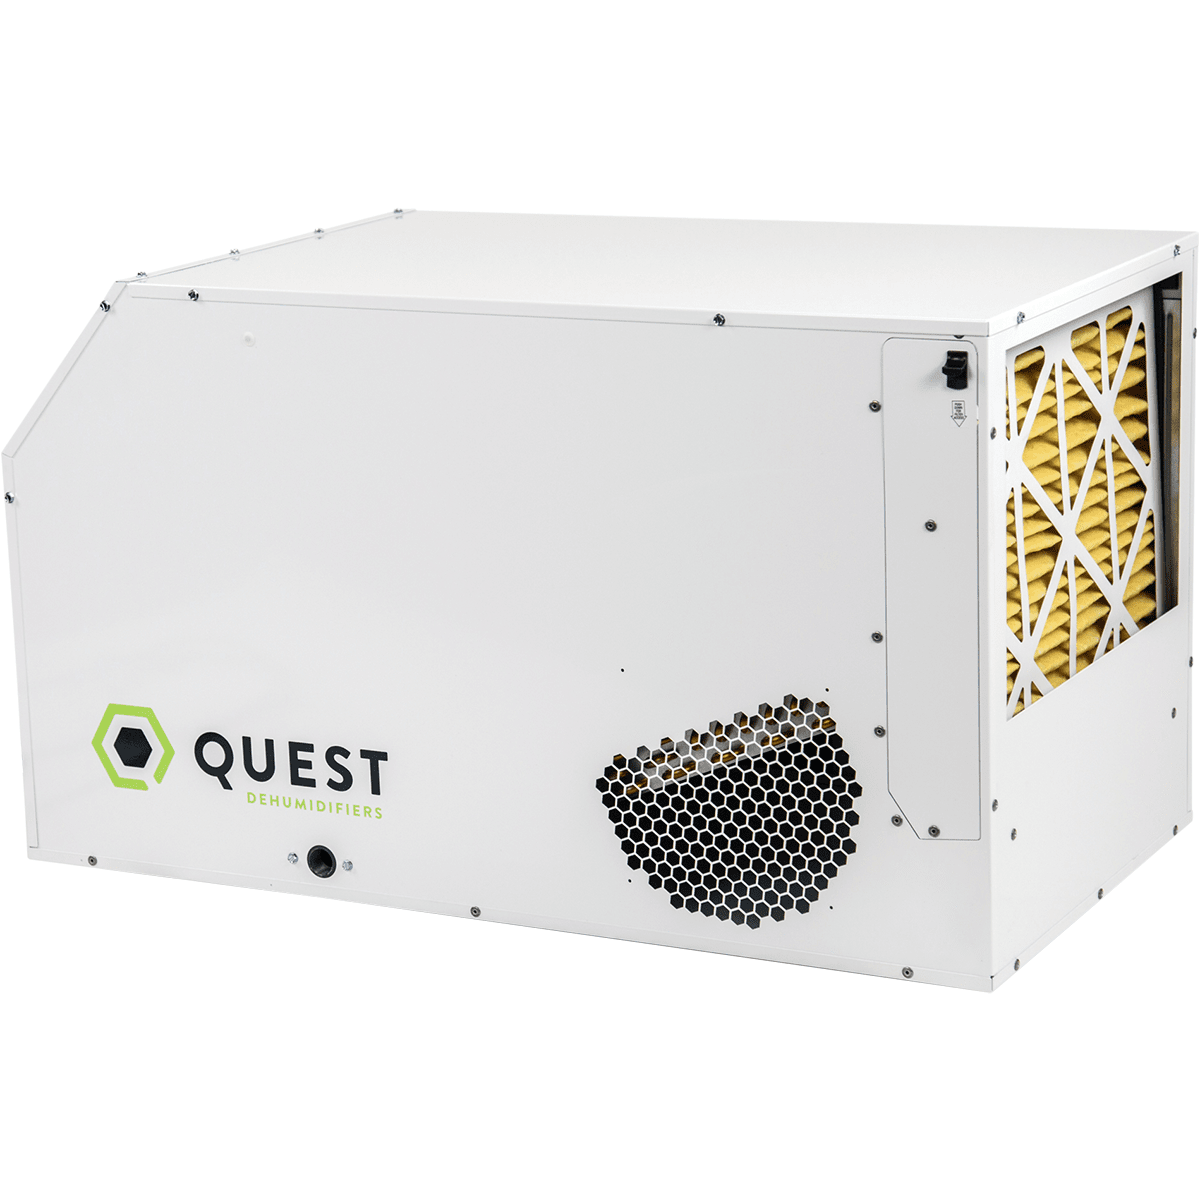 Quest Dual 105 Overhead Dehumidifier